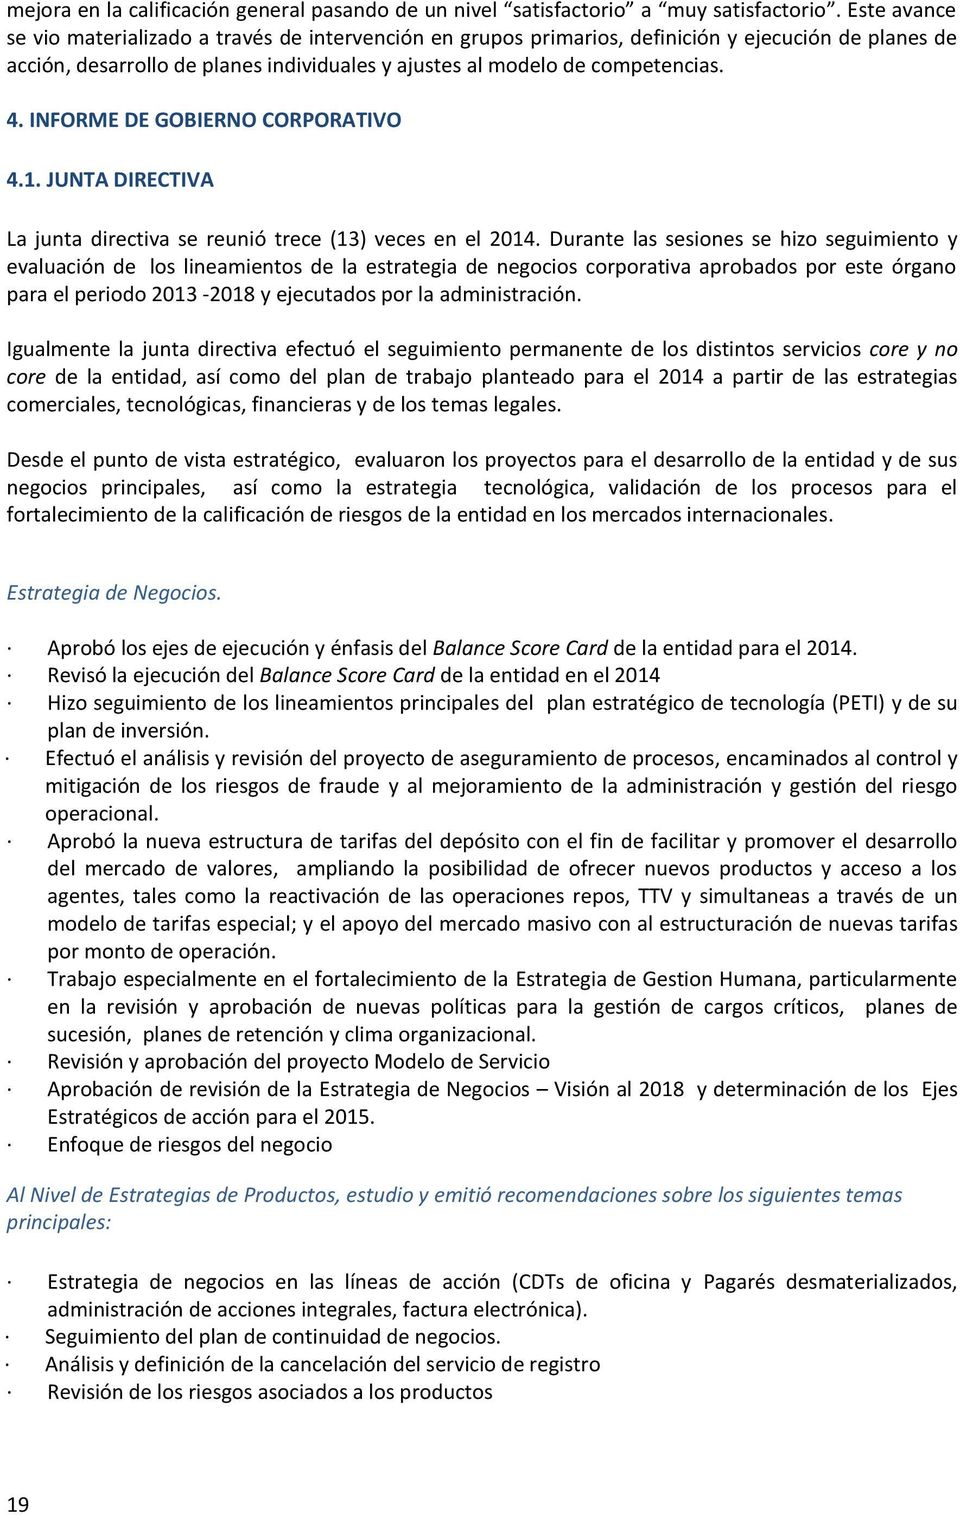 INFORME DE GOBIERNO CORPORATIVO 4.1. JUNTA DIRECTIVA La junta directiva se reunió trece (13) veces en el 2014.